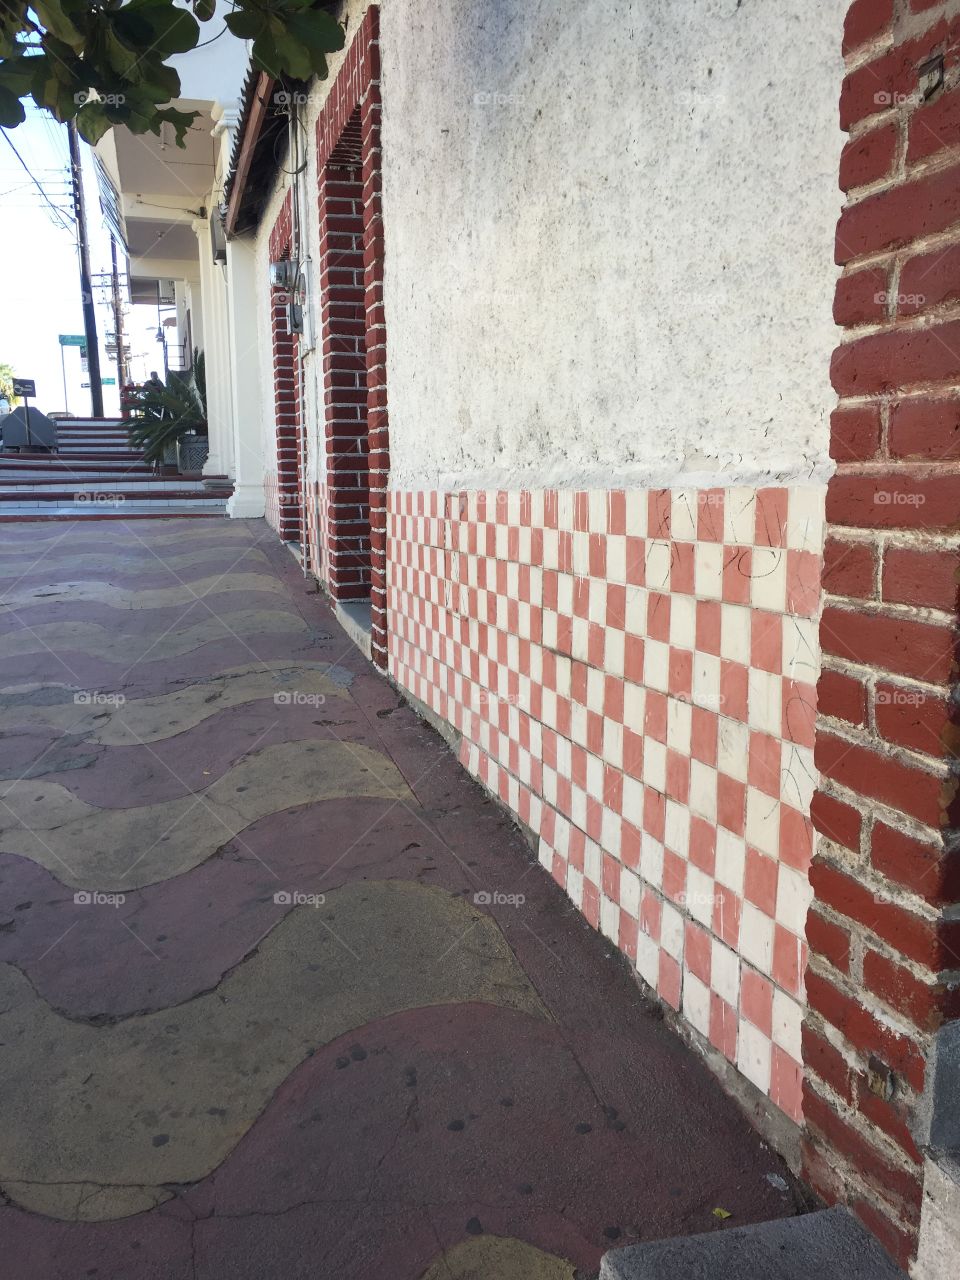 Patterns along the sidewalk in La Paz, México